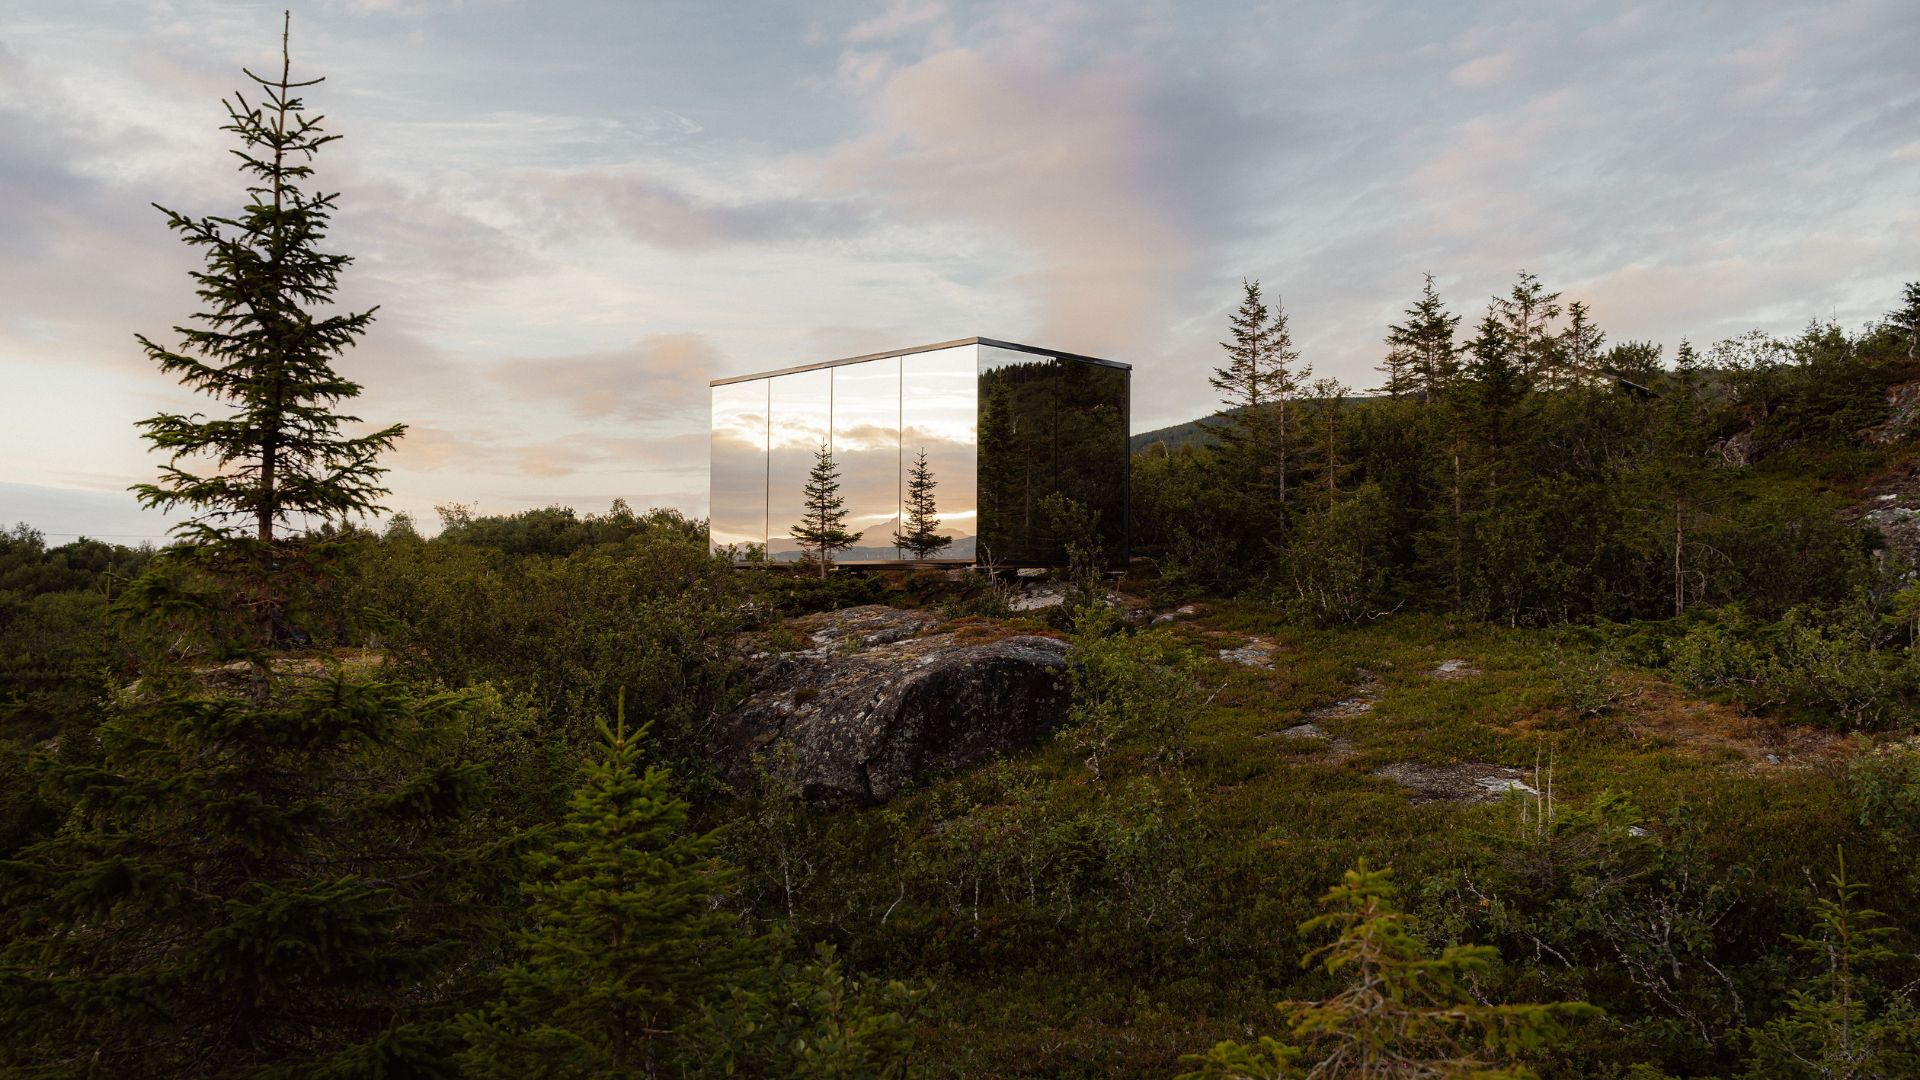 Den estiske virksomhed ÖÖD producerer små feriehuse - tiny houses - til placeringer i naturen. Virksomheden vil også ind på det danske, grønlandske og færøske marked. (Foto: Jurisadventure)